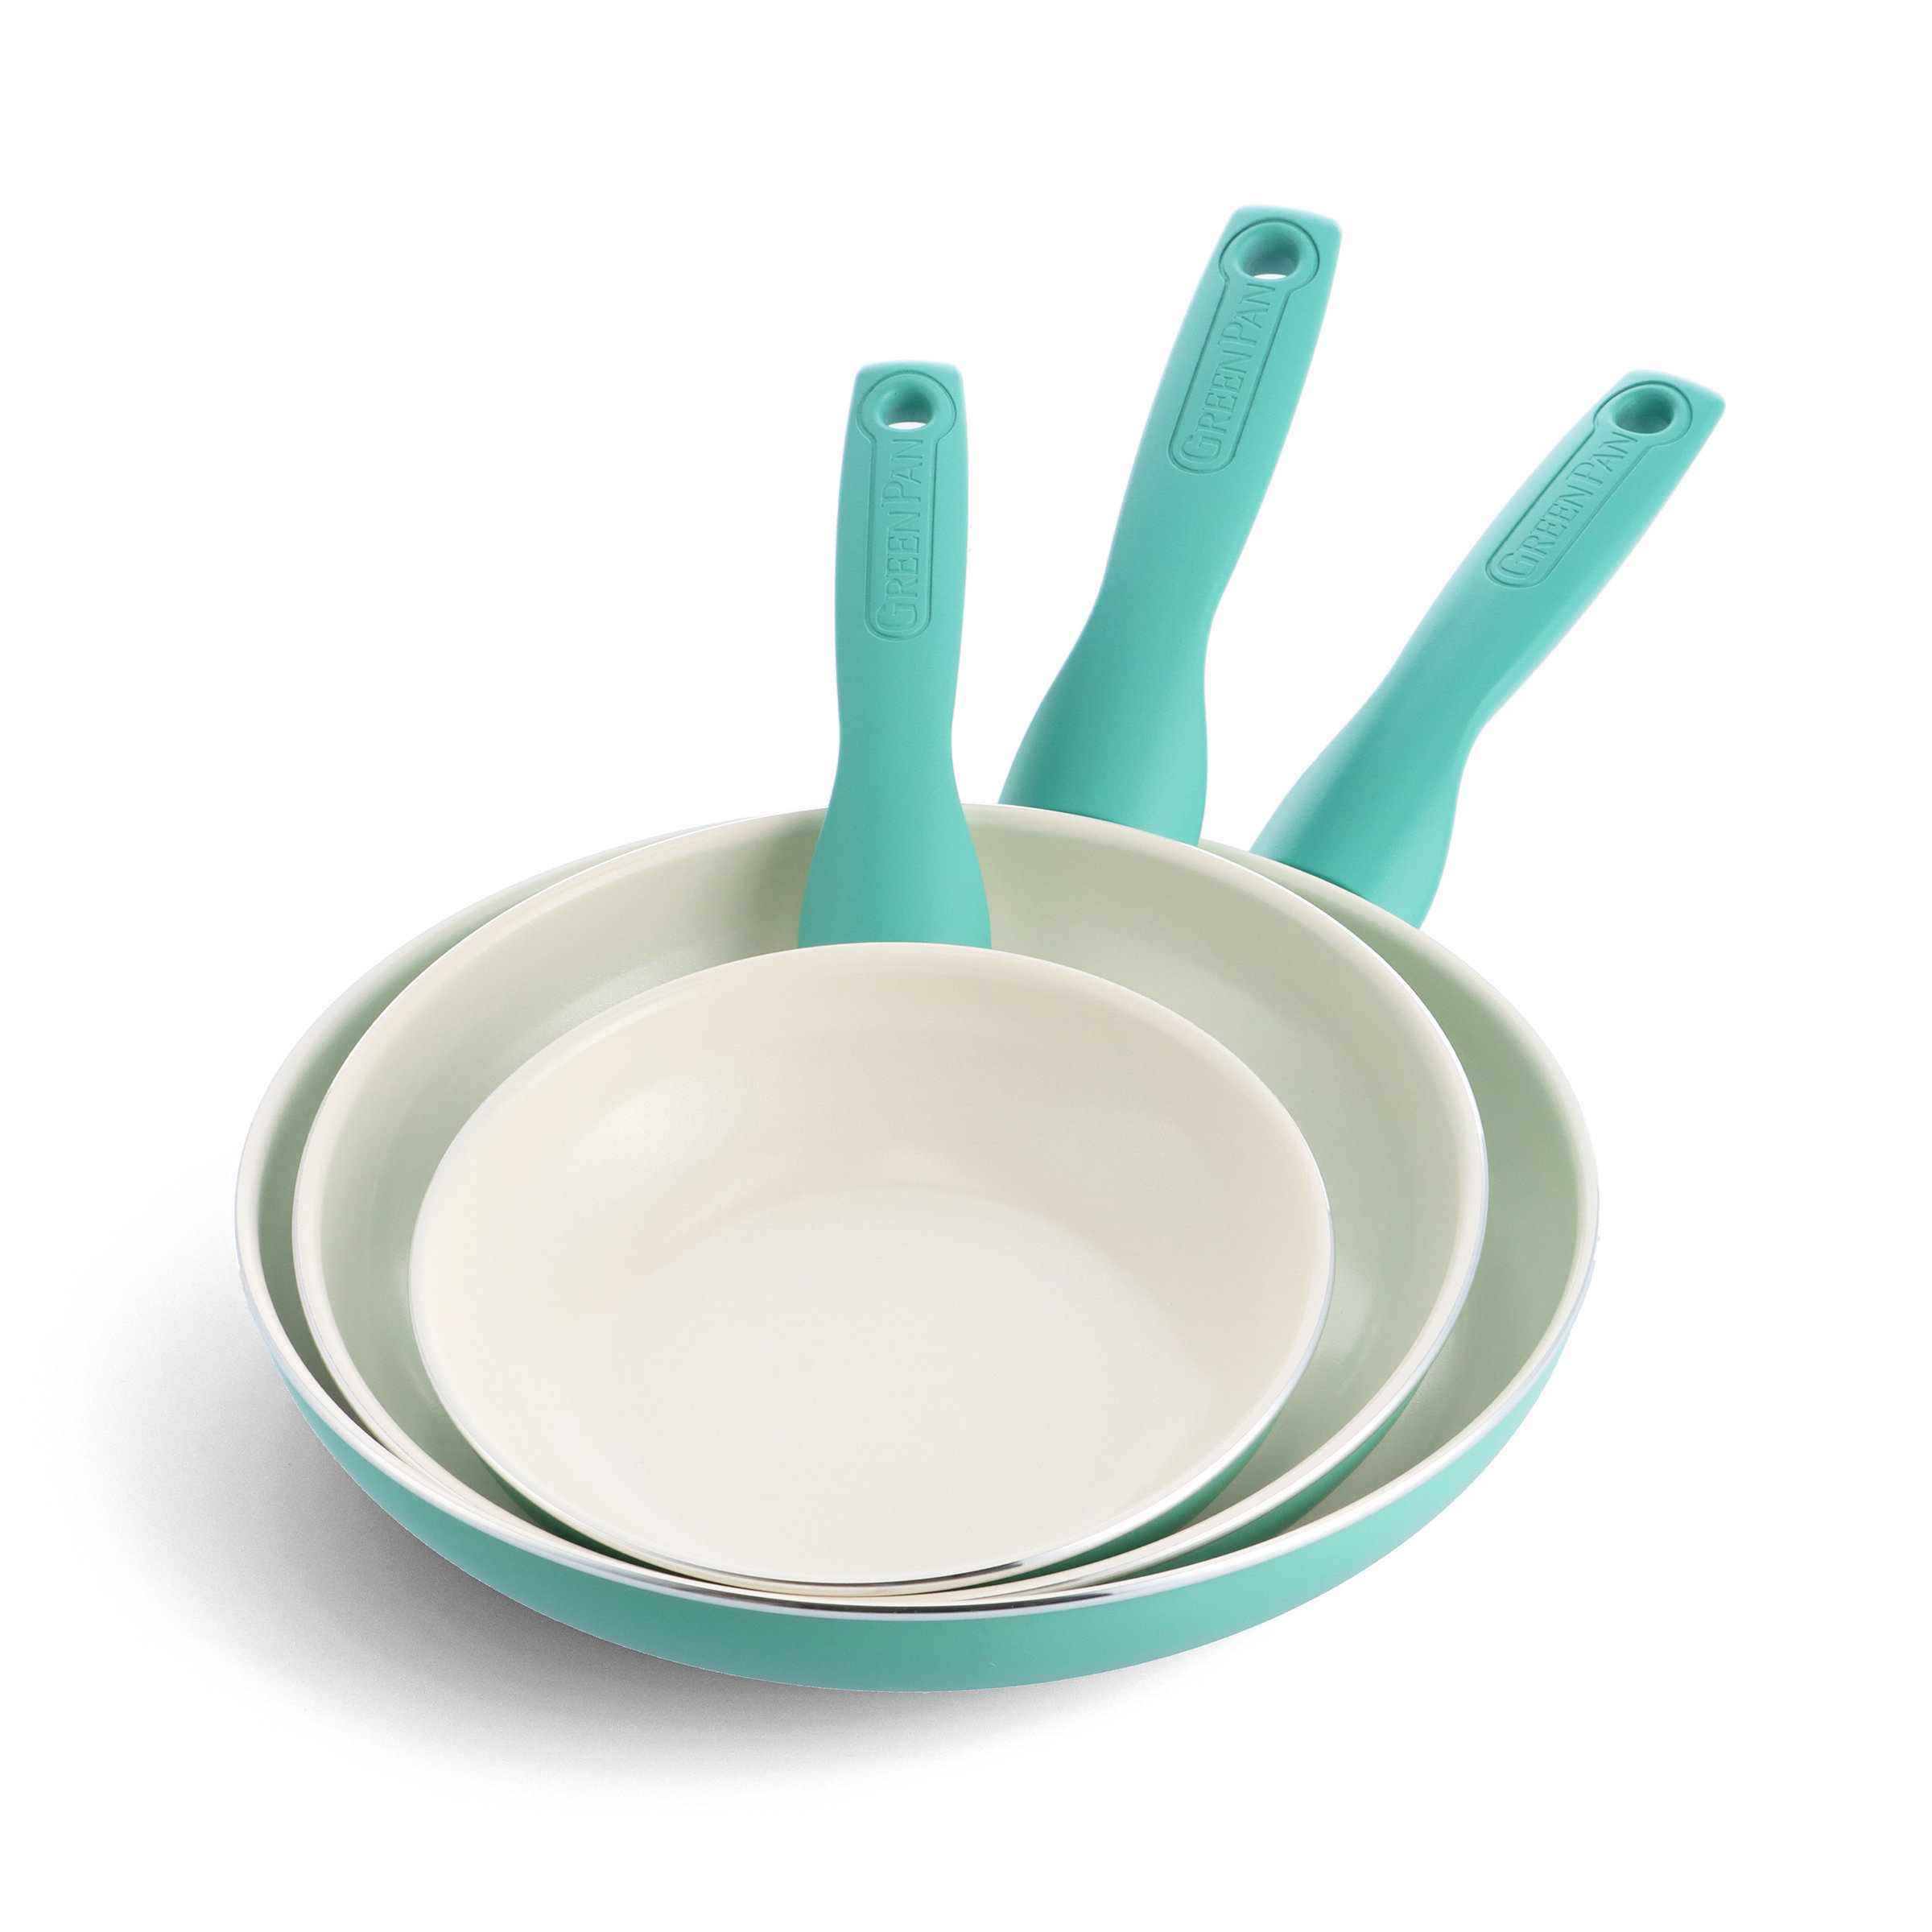 Rio Ceramic Nonstick 16-Piece Cookware Set | Turquoise